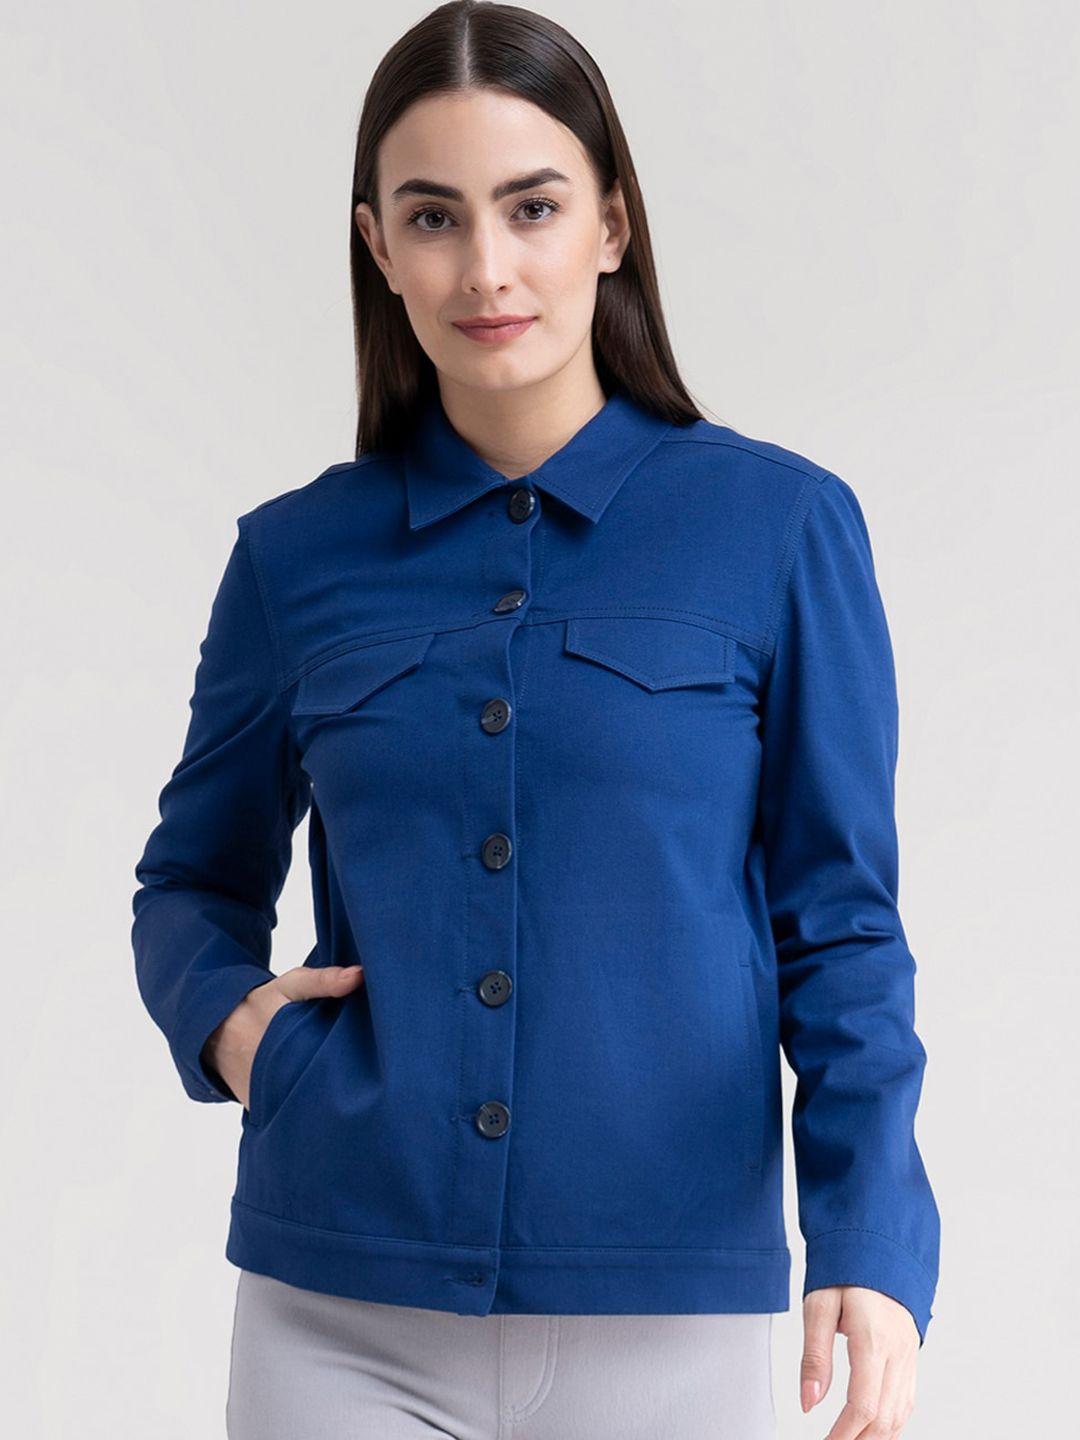 fablestreet women blue denim jacket